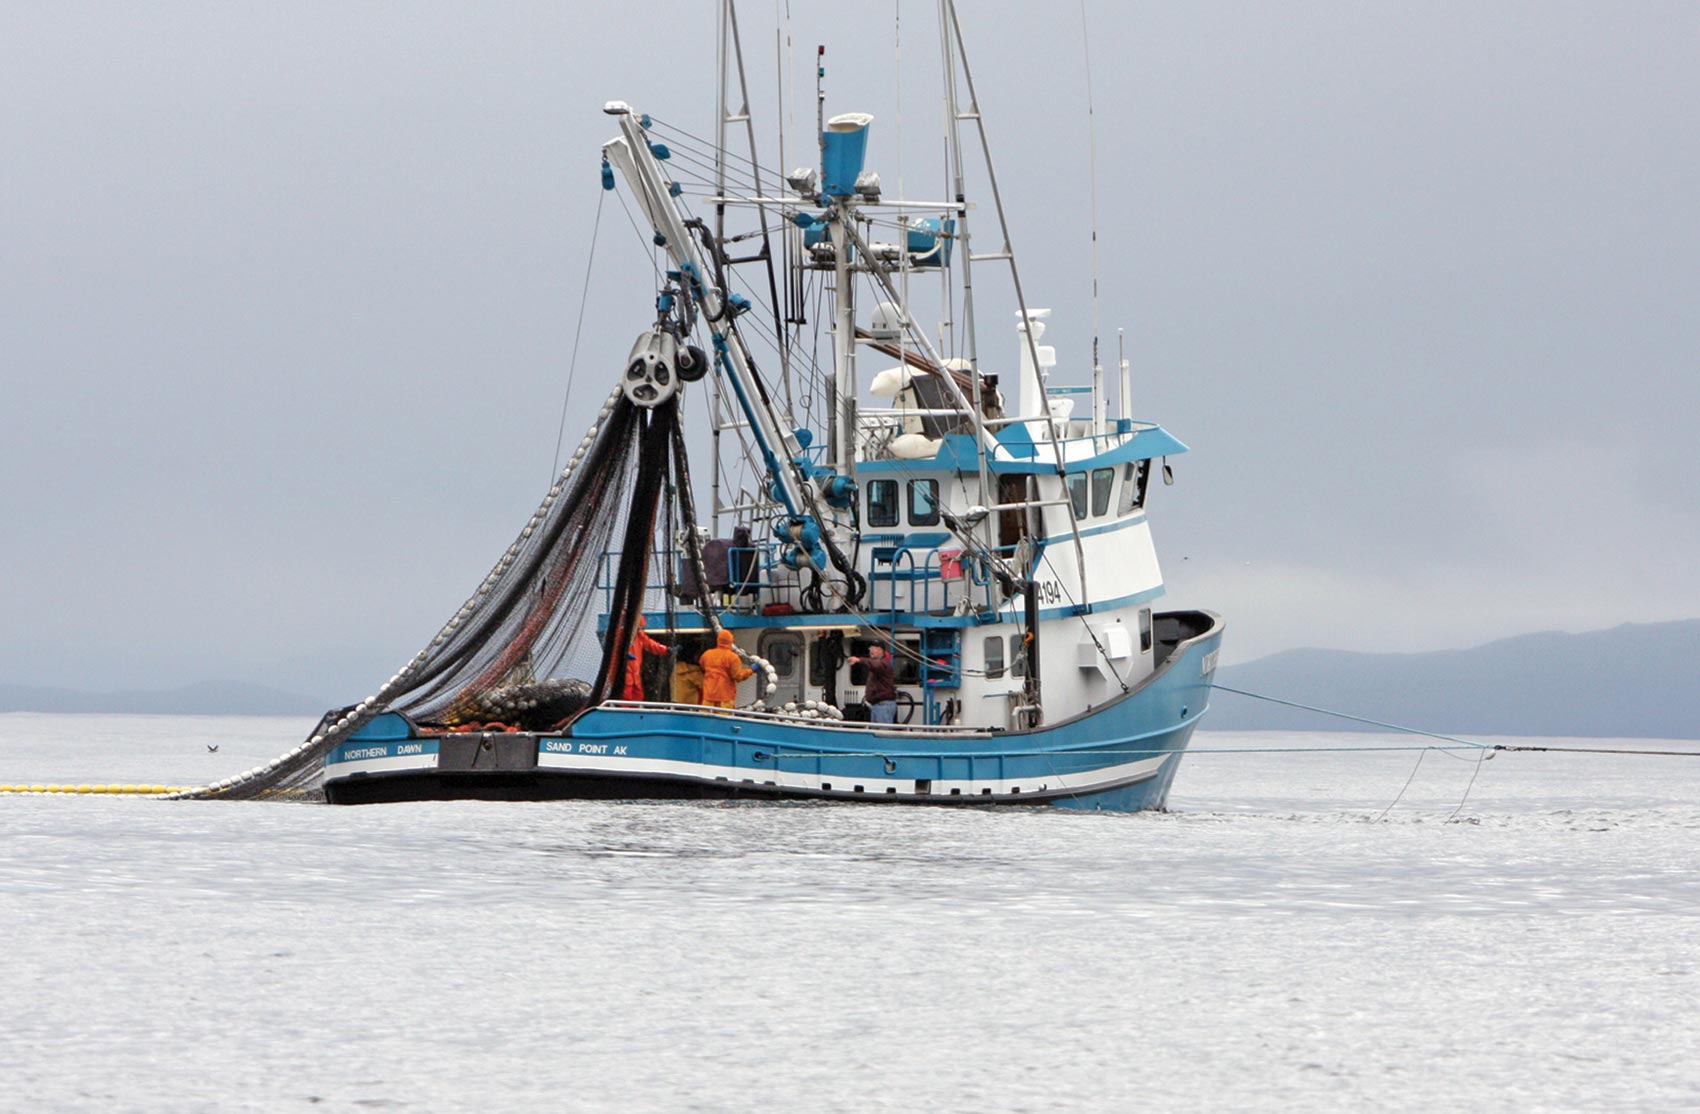 a vessel in an Alaskan bay